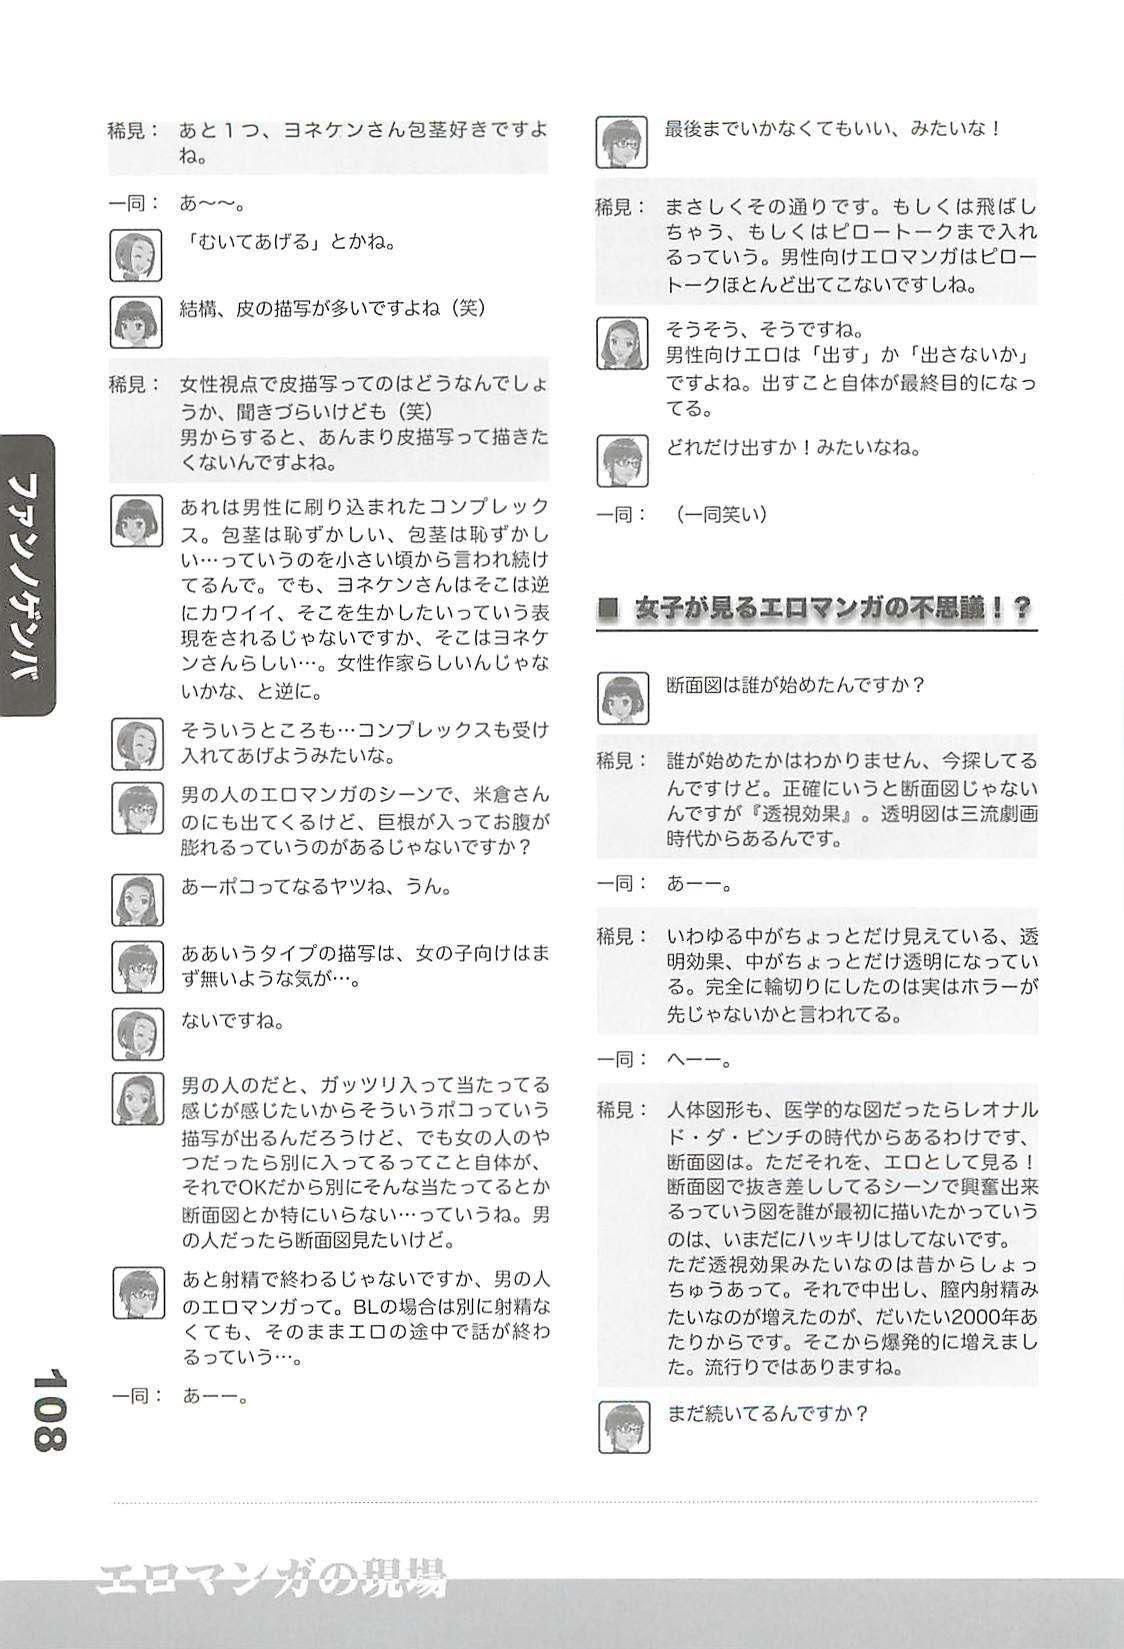 Ero-Manga no Genba Vol. 2 106